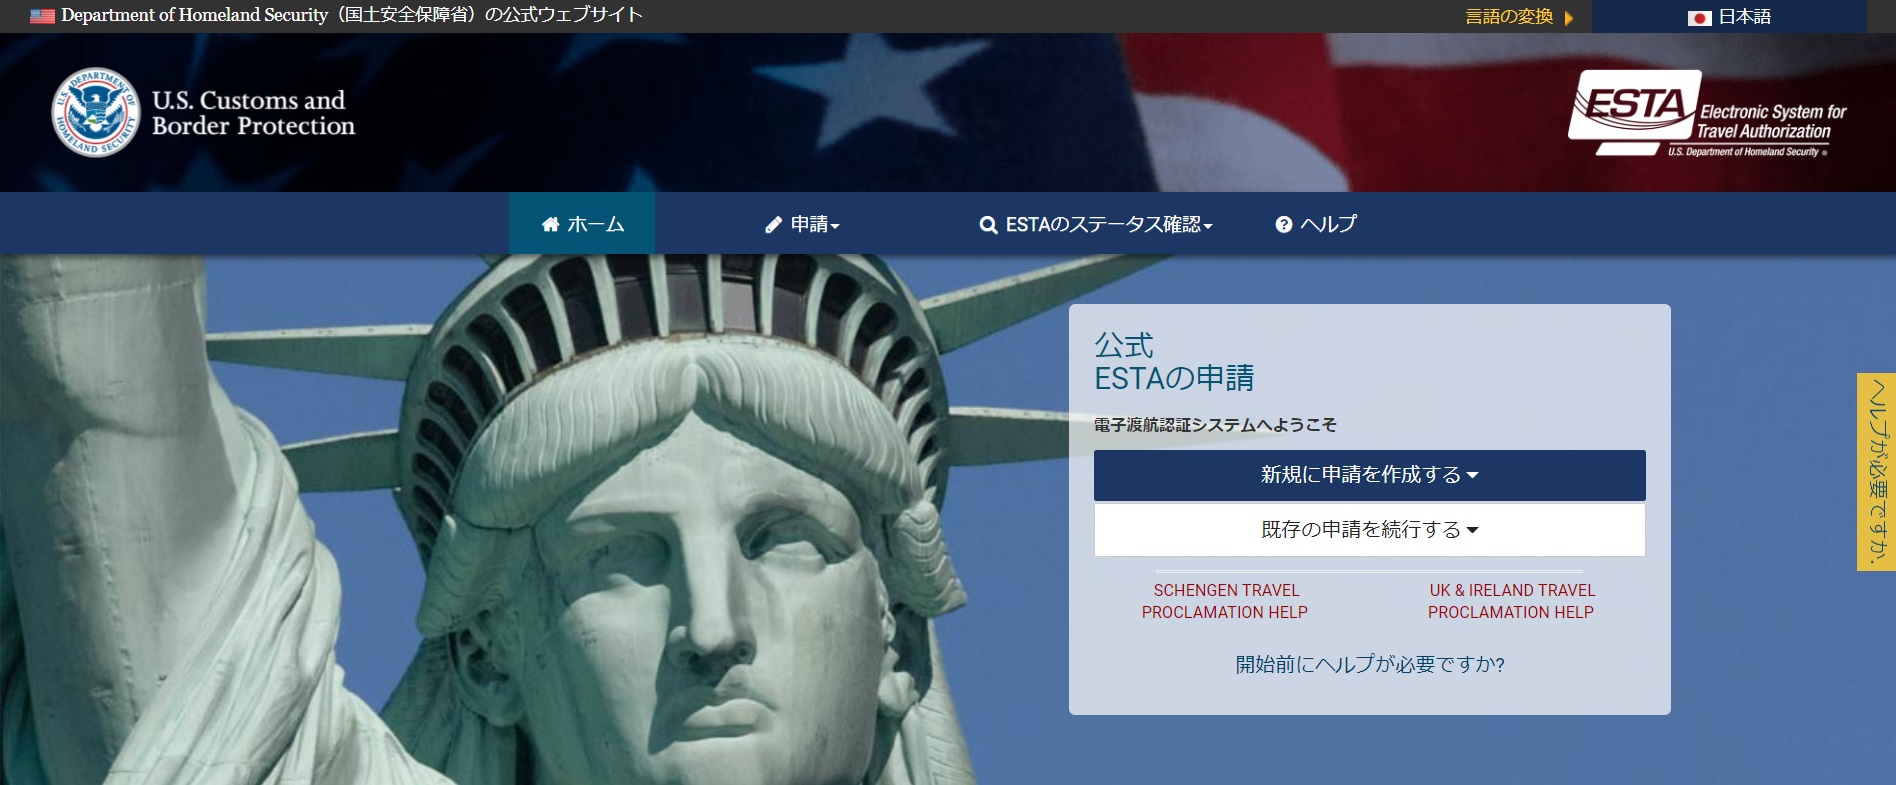 ESTA公式サイト